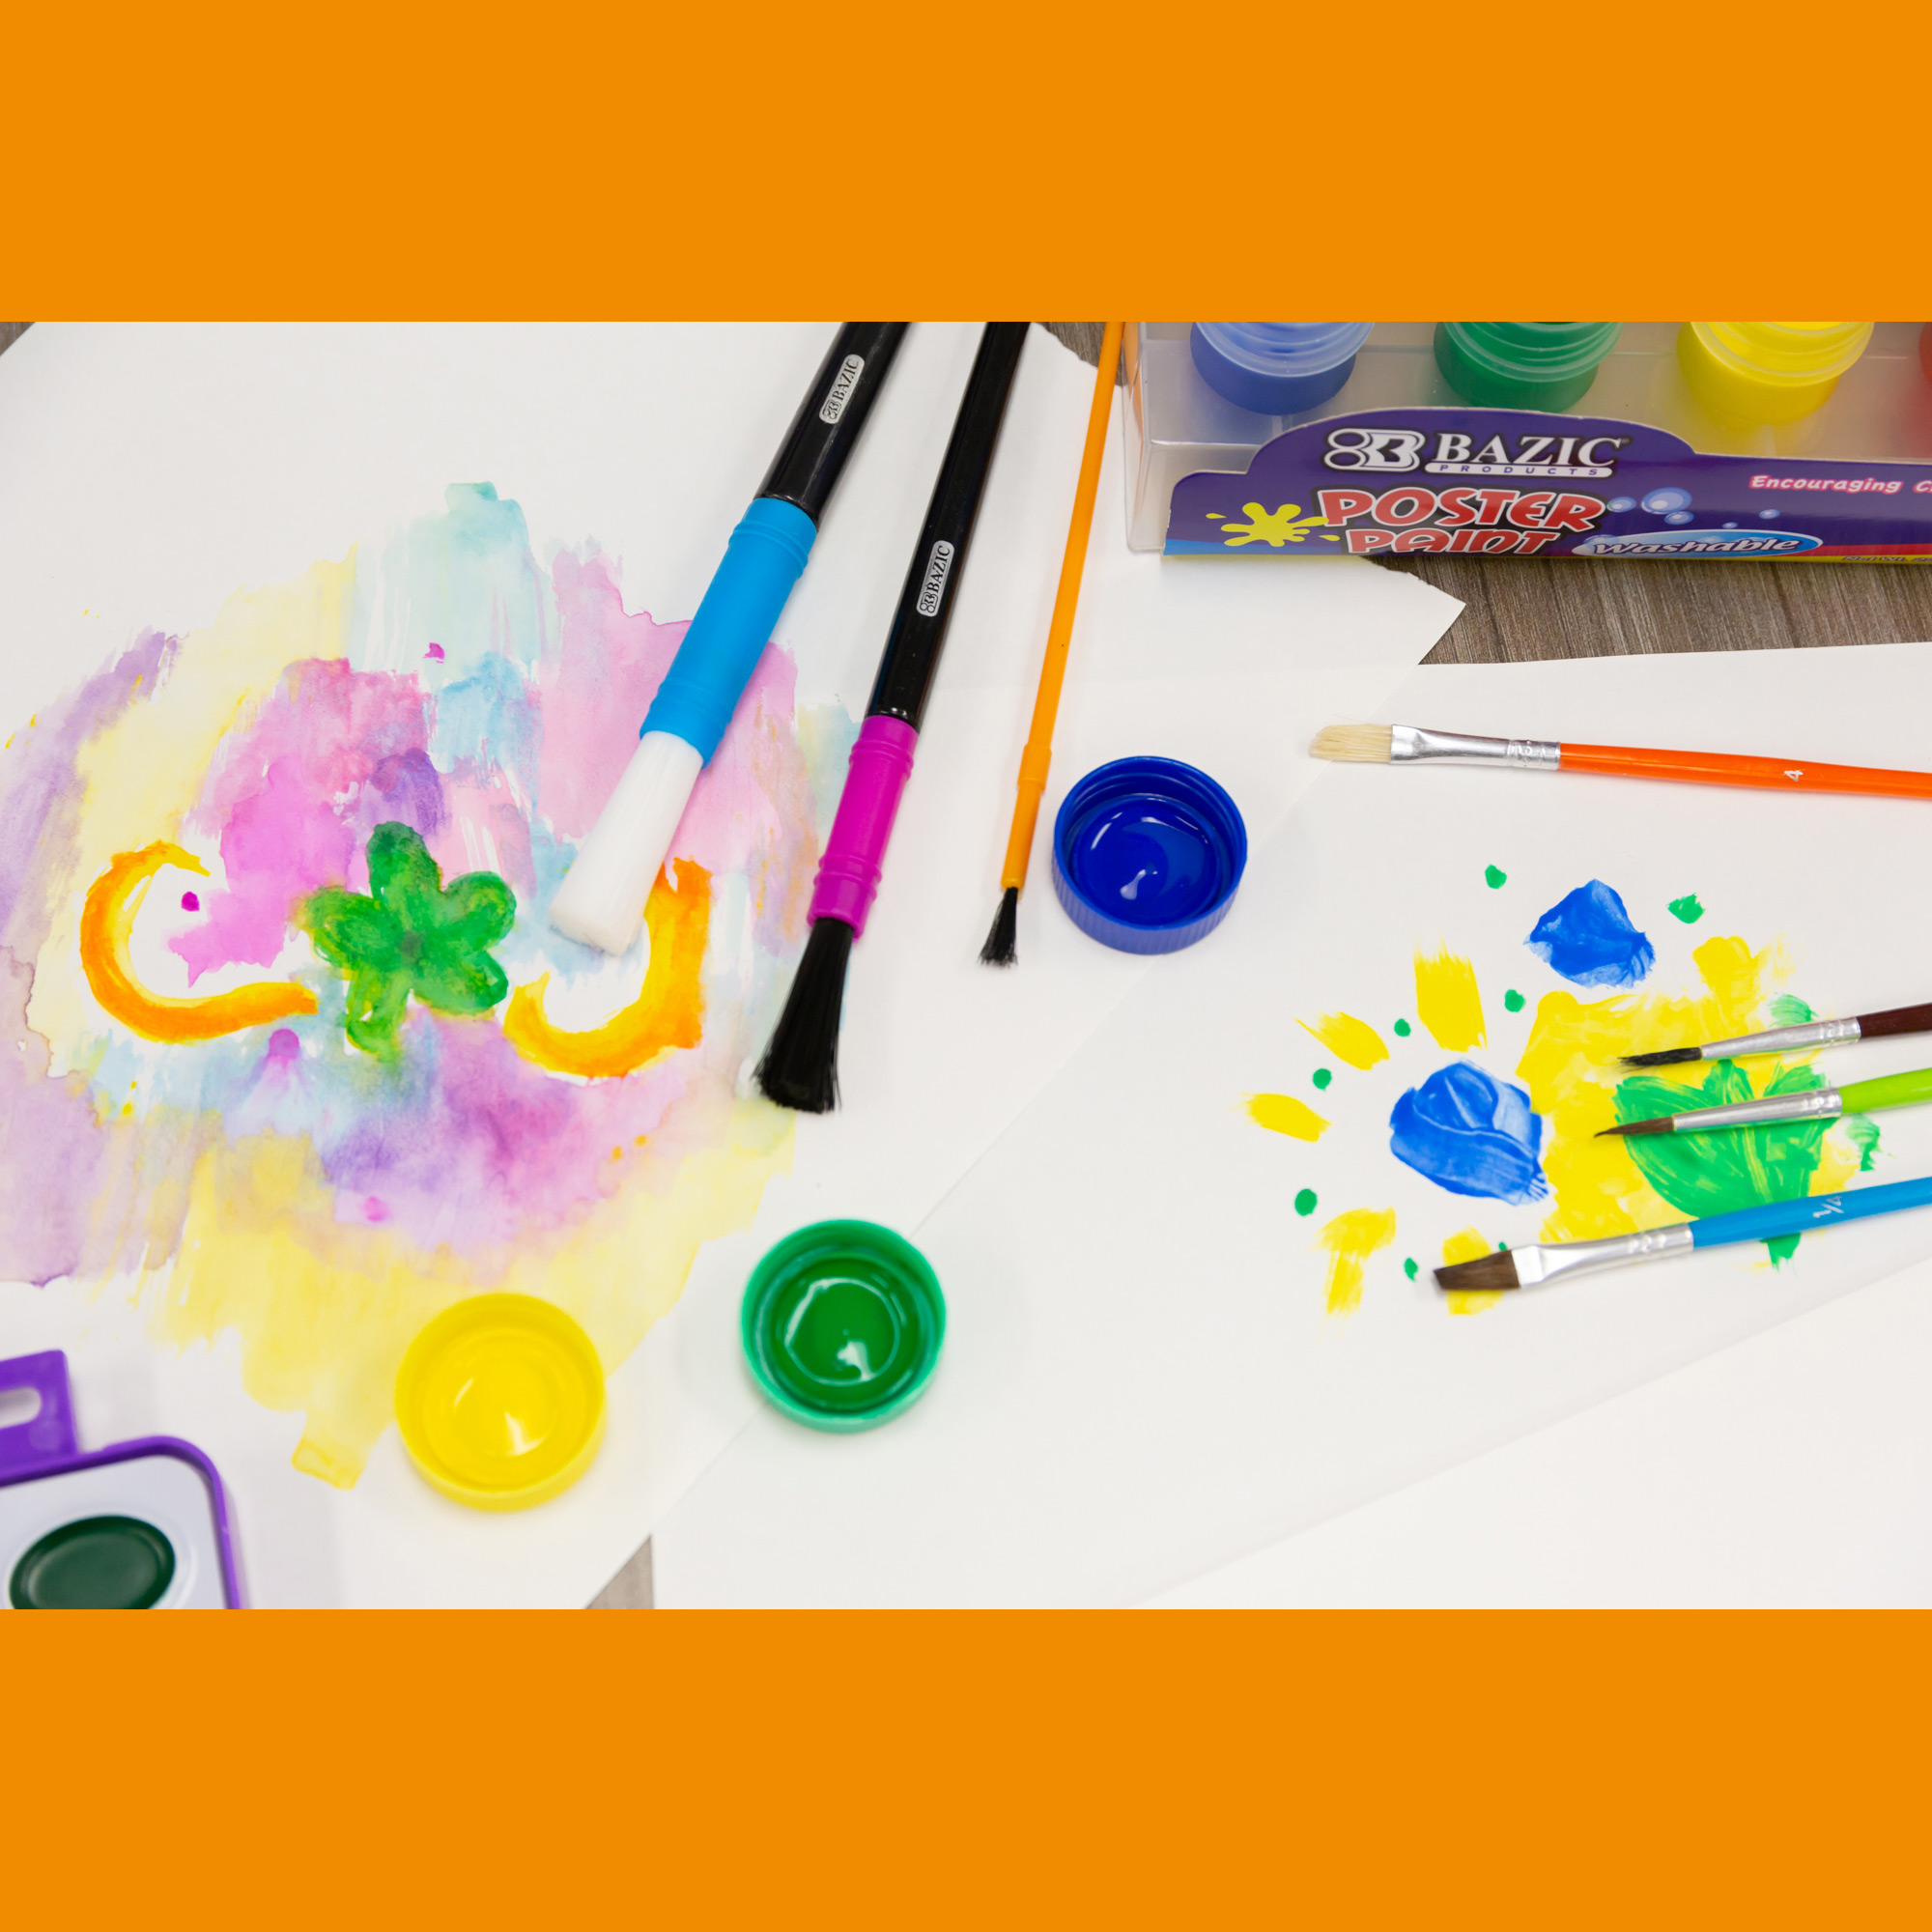 BELMAKS Paint Brush Cleaner Tool for Kids – Paint Brush Rinser